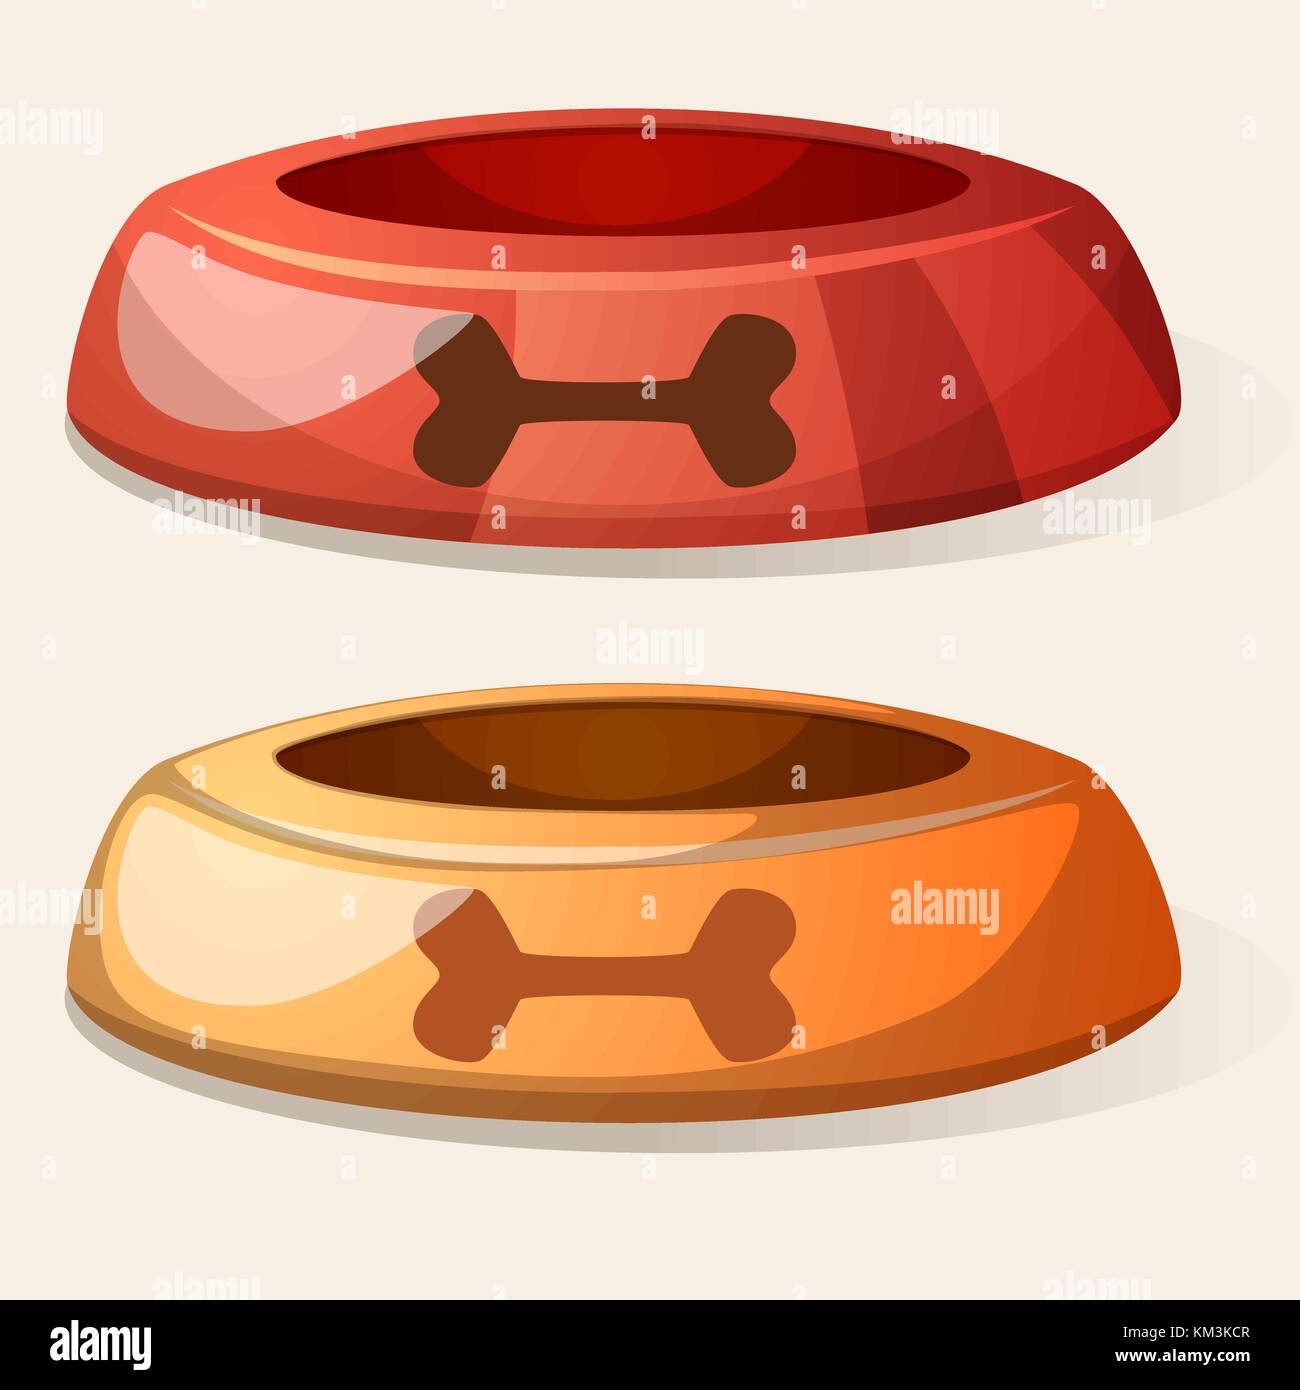 Cartoon dog bowl. rouge et jaune. Illustration de Vecteur